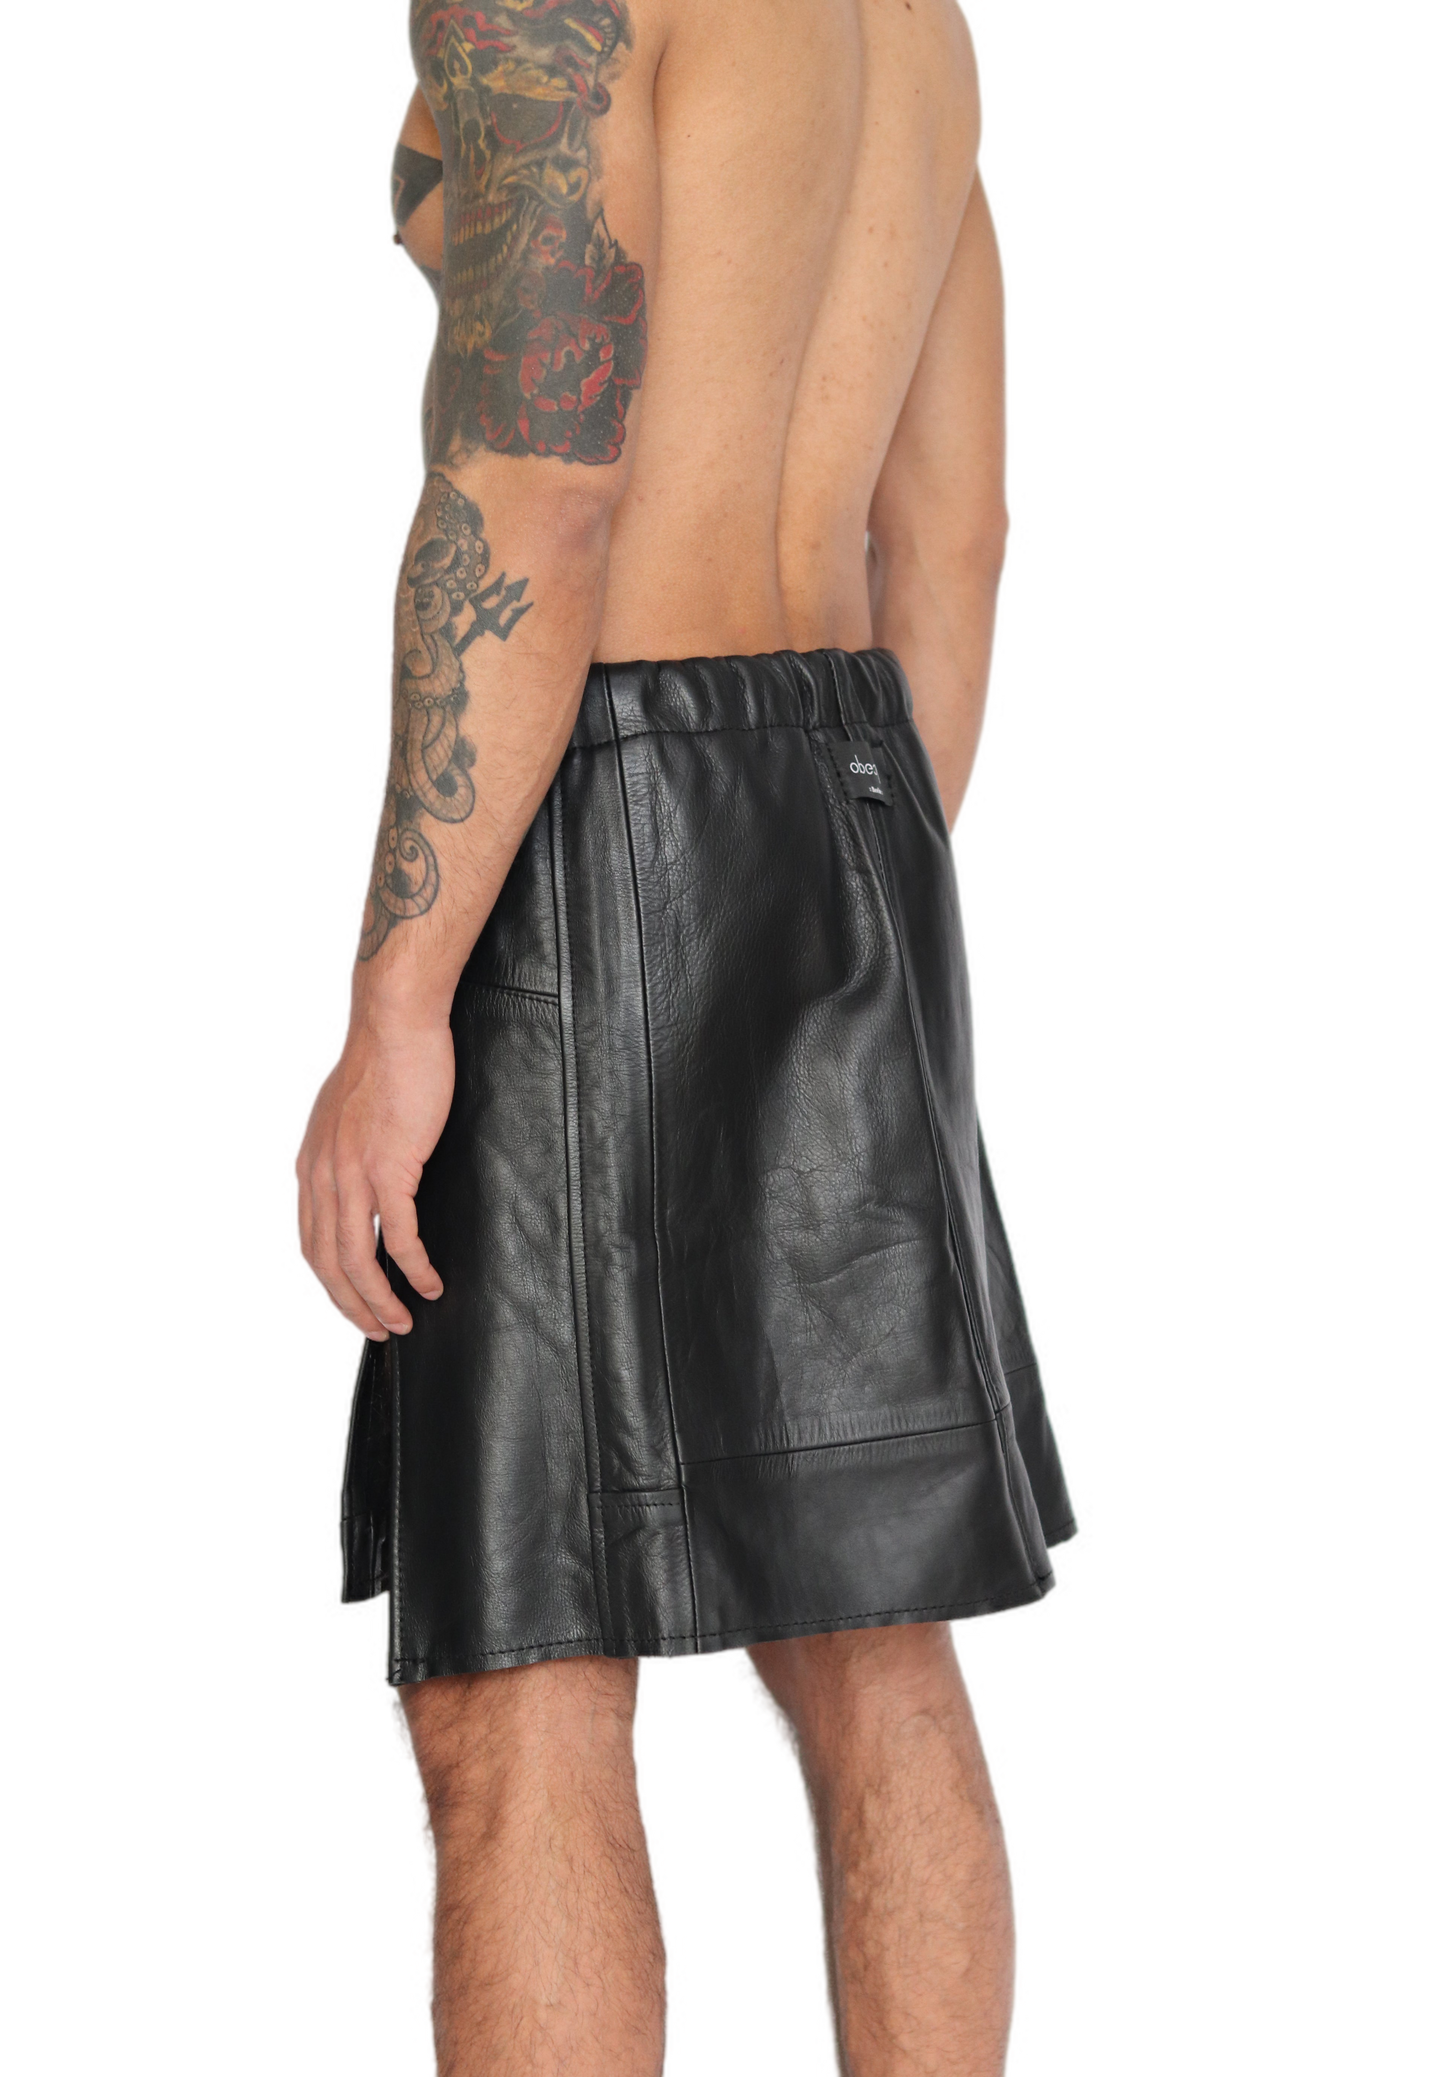 Umma leather skirt